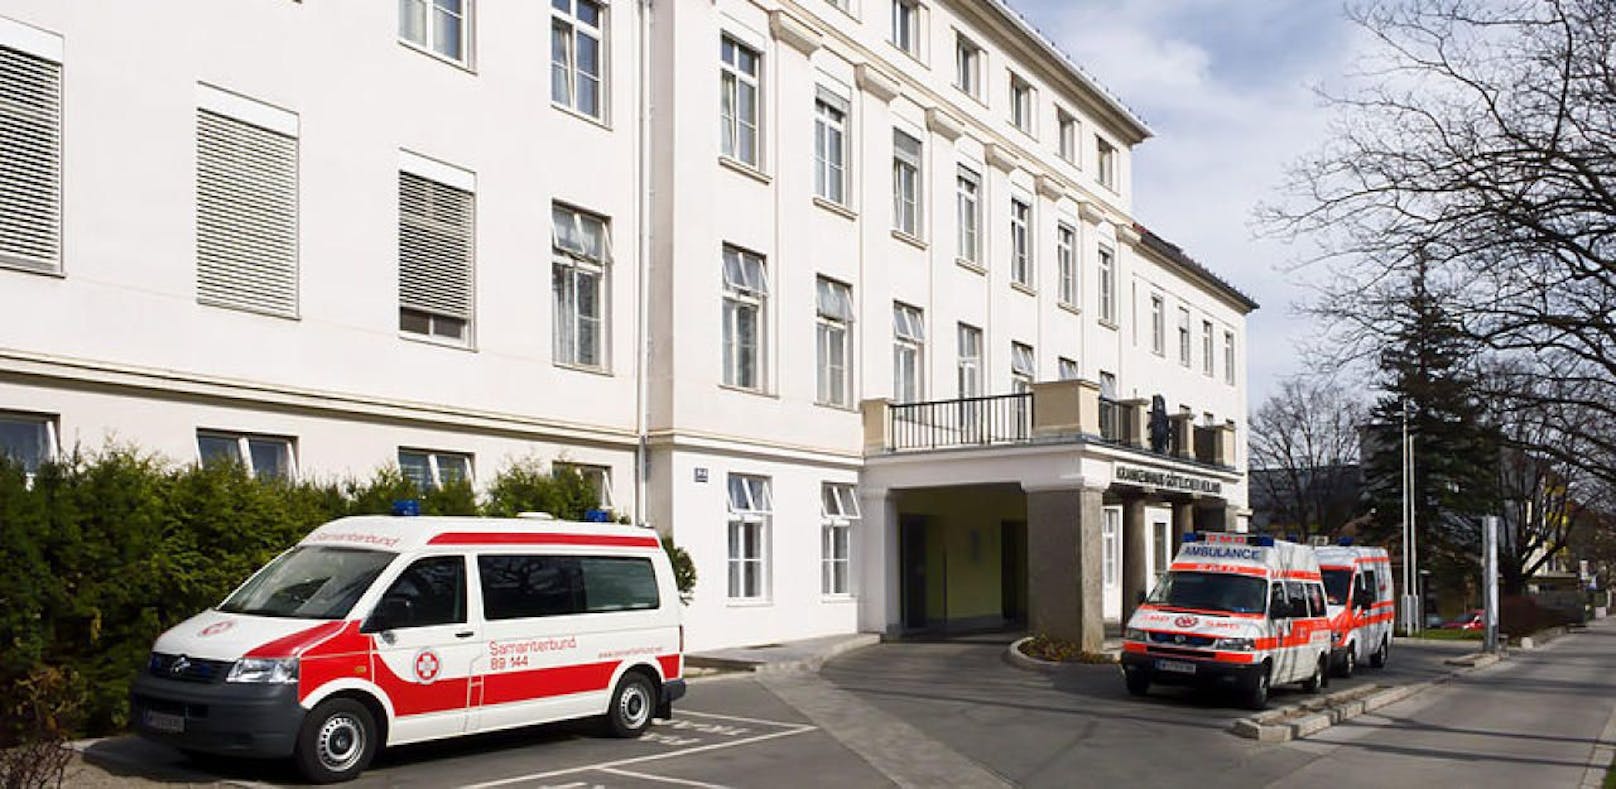 Herztod vor Spital: Stadt untersucht das Drama